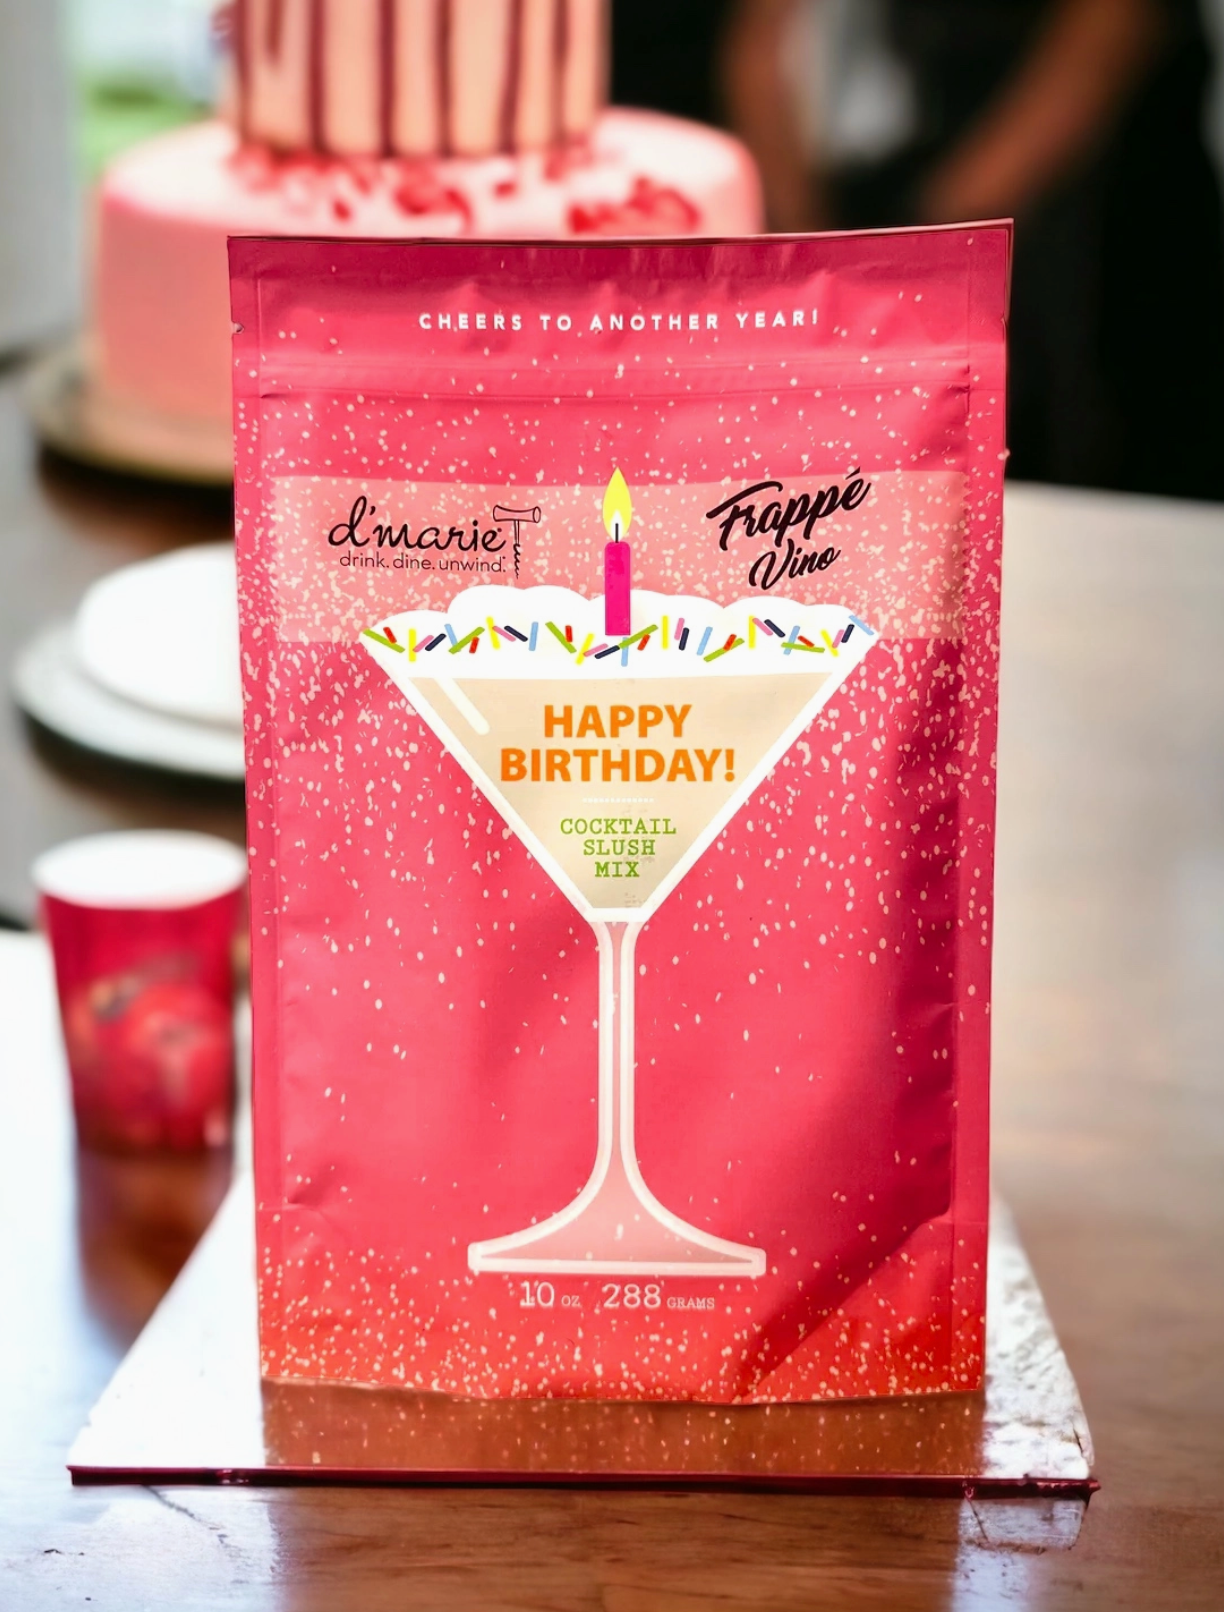 Happy Birthday Cocktail Mix